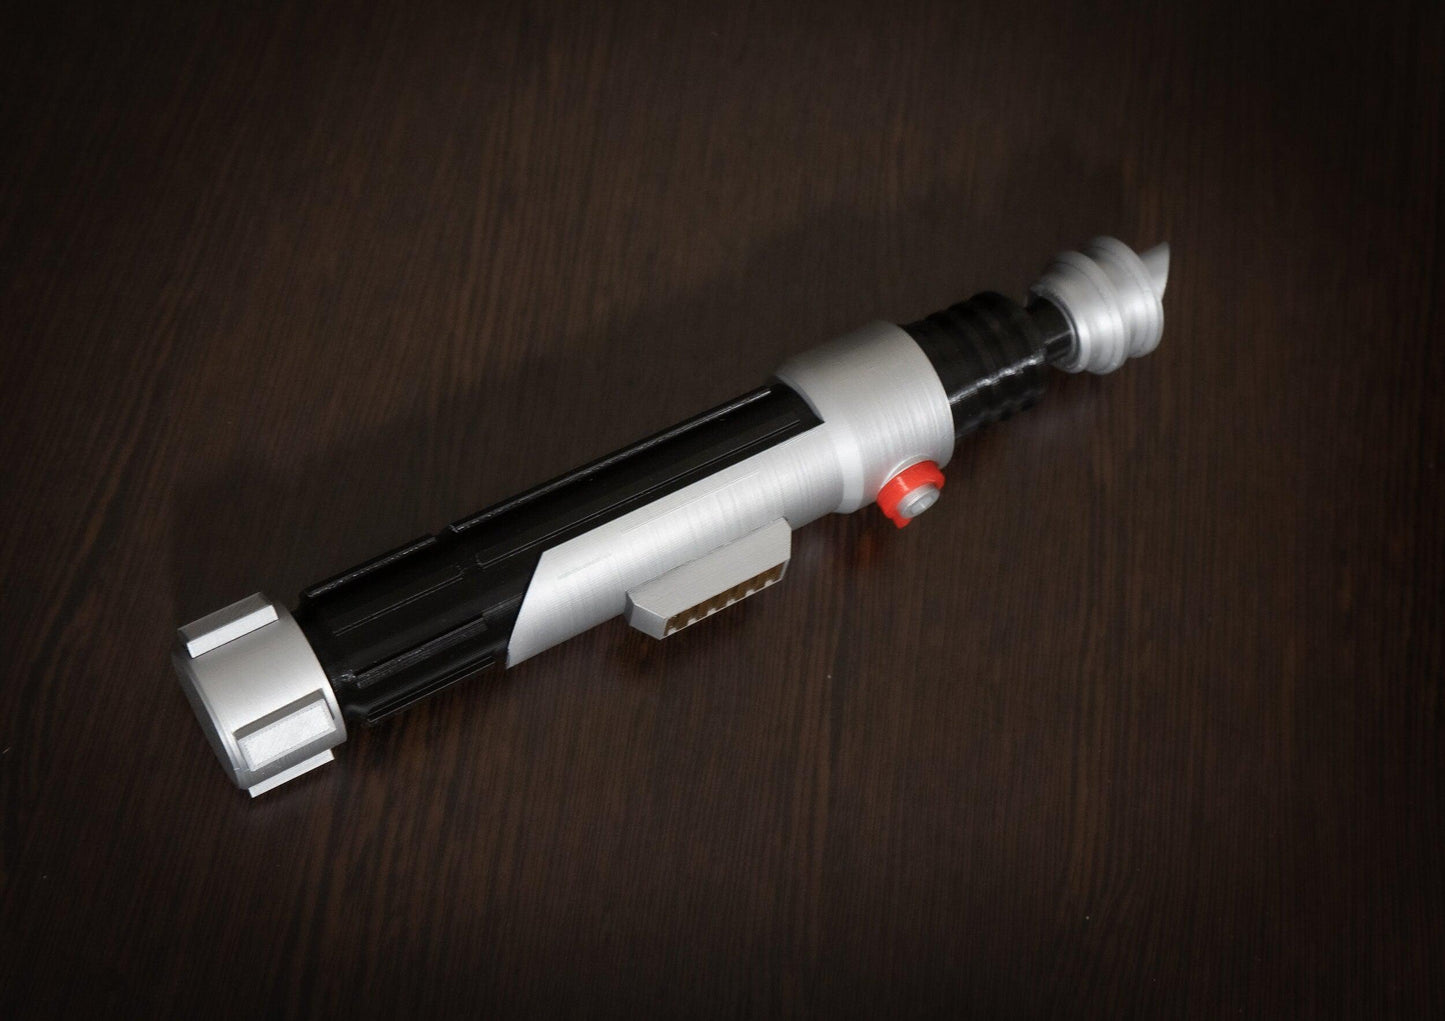 Ezra Bridger second lightsaber hilt | Star Wars Cosplay Prop - 3DPrintProps